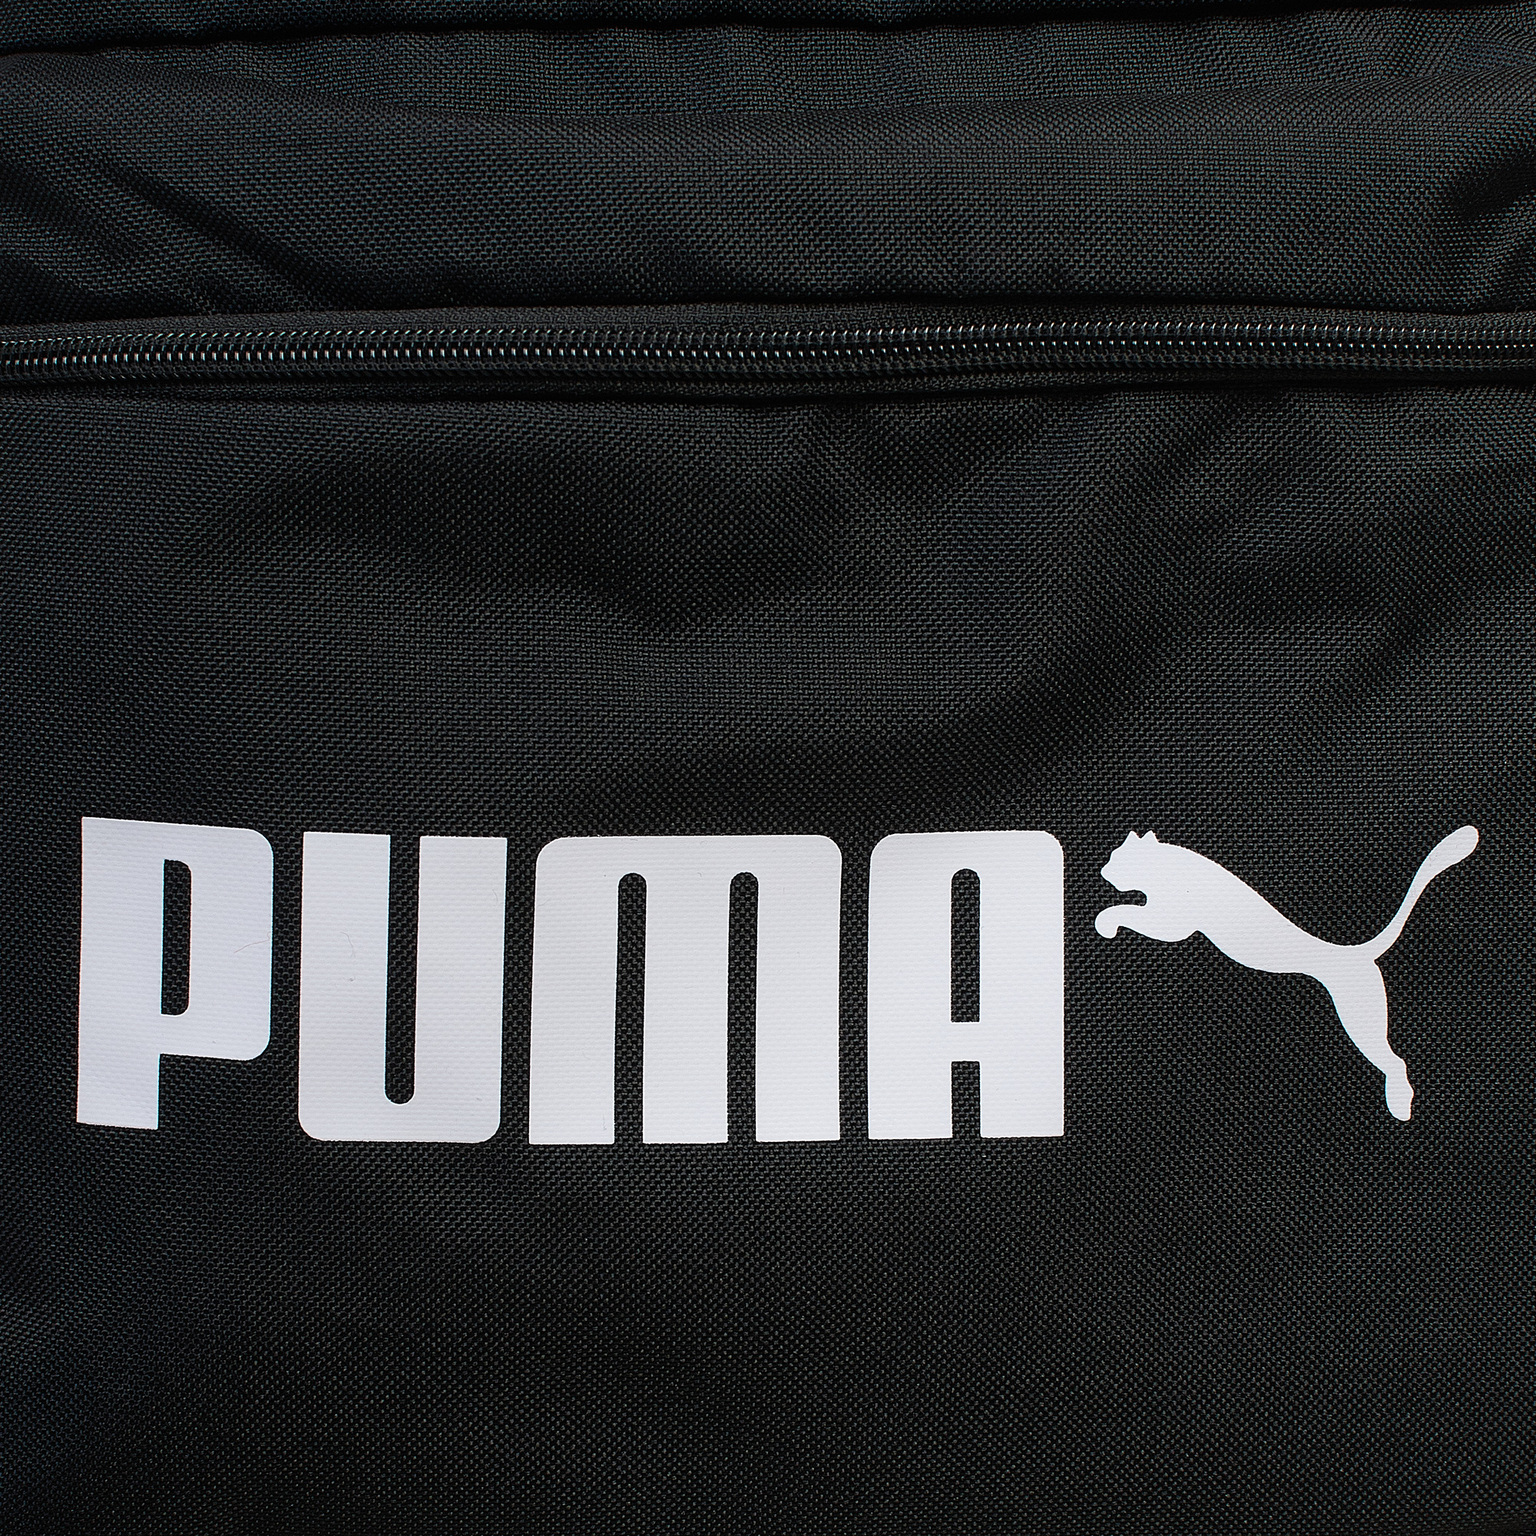 Рюкзак Puma Phase 07748201